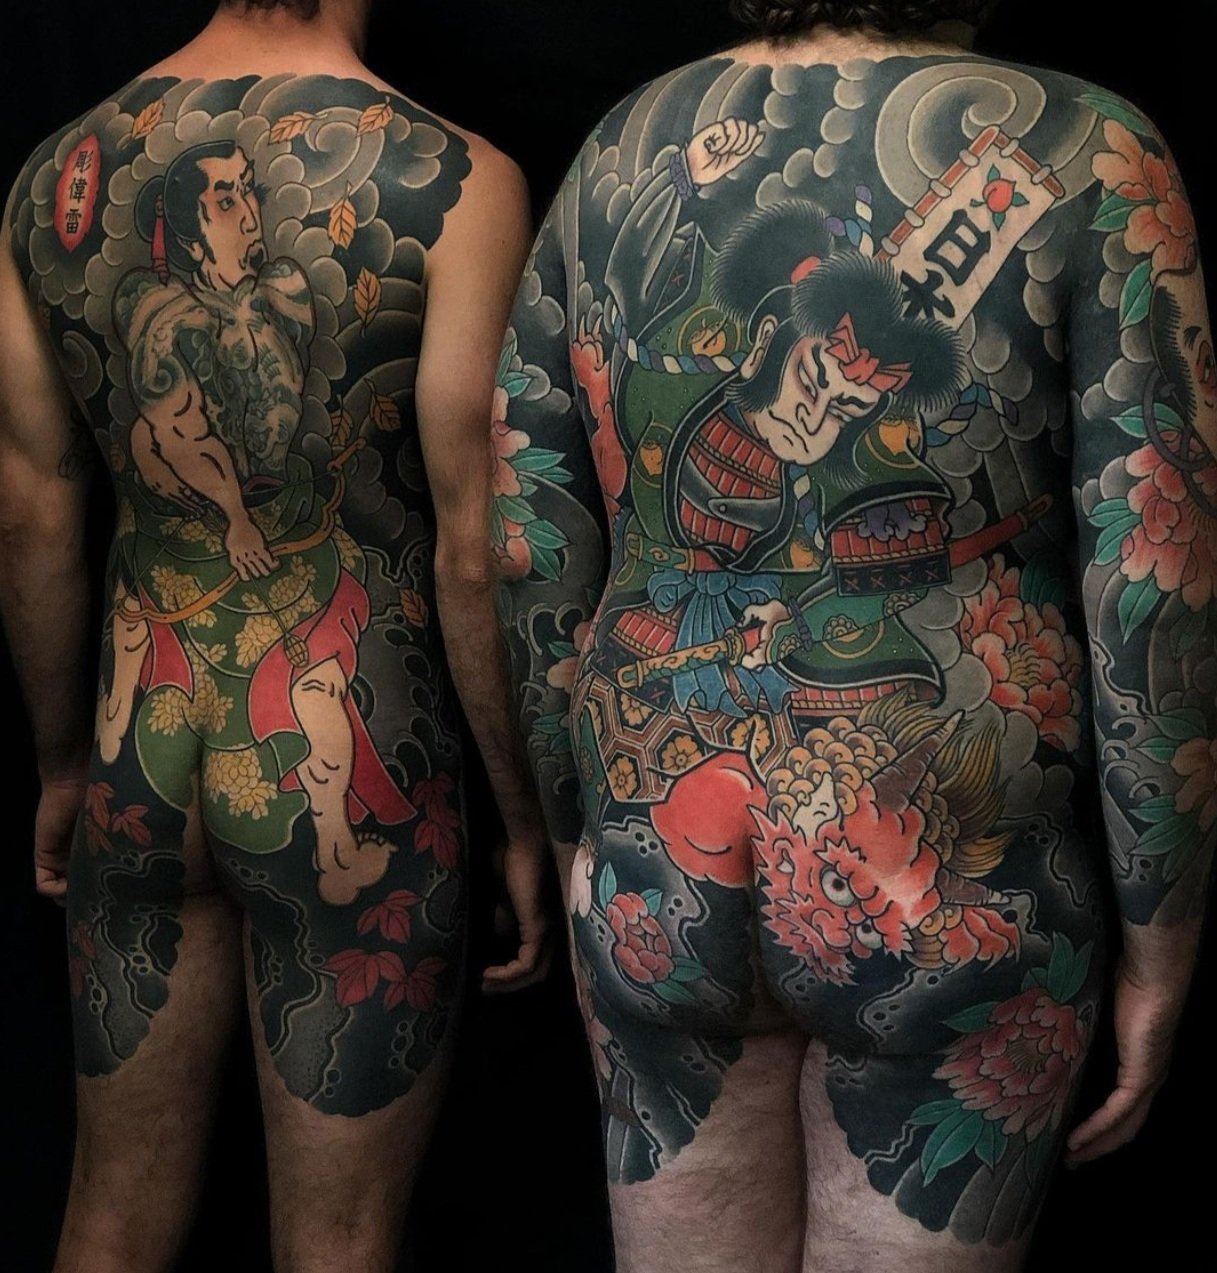 https://images.squarespace-cdn.com/content/v1/604b322d97201213e03825e2/a90a3190-031c-46d7-9254-9e34de092708/japanese-backpiece-tattoos-sunshine-coast.jpg